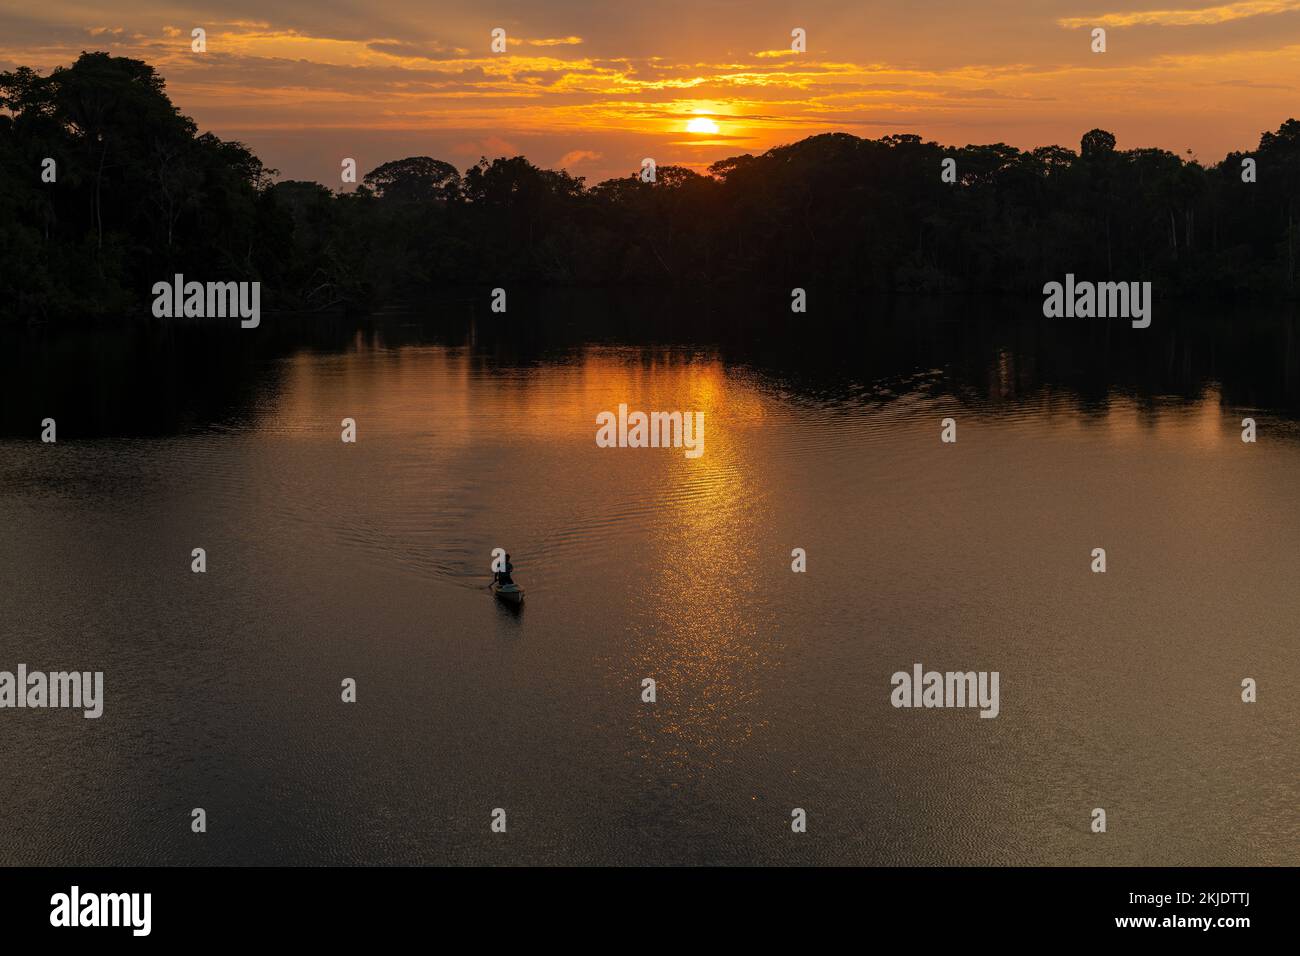 Silhouette d'homme en canoë au lever du soleil, forêt amazonienne. Bassin de l'Amazone au Brésil, Pérou, Equateur, Bolivie, Guyana, Venezuela, Colombie, Suriname. Banque D'Images